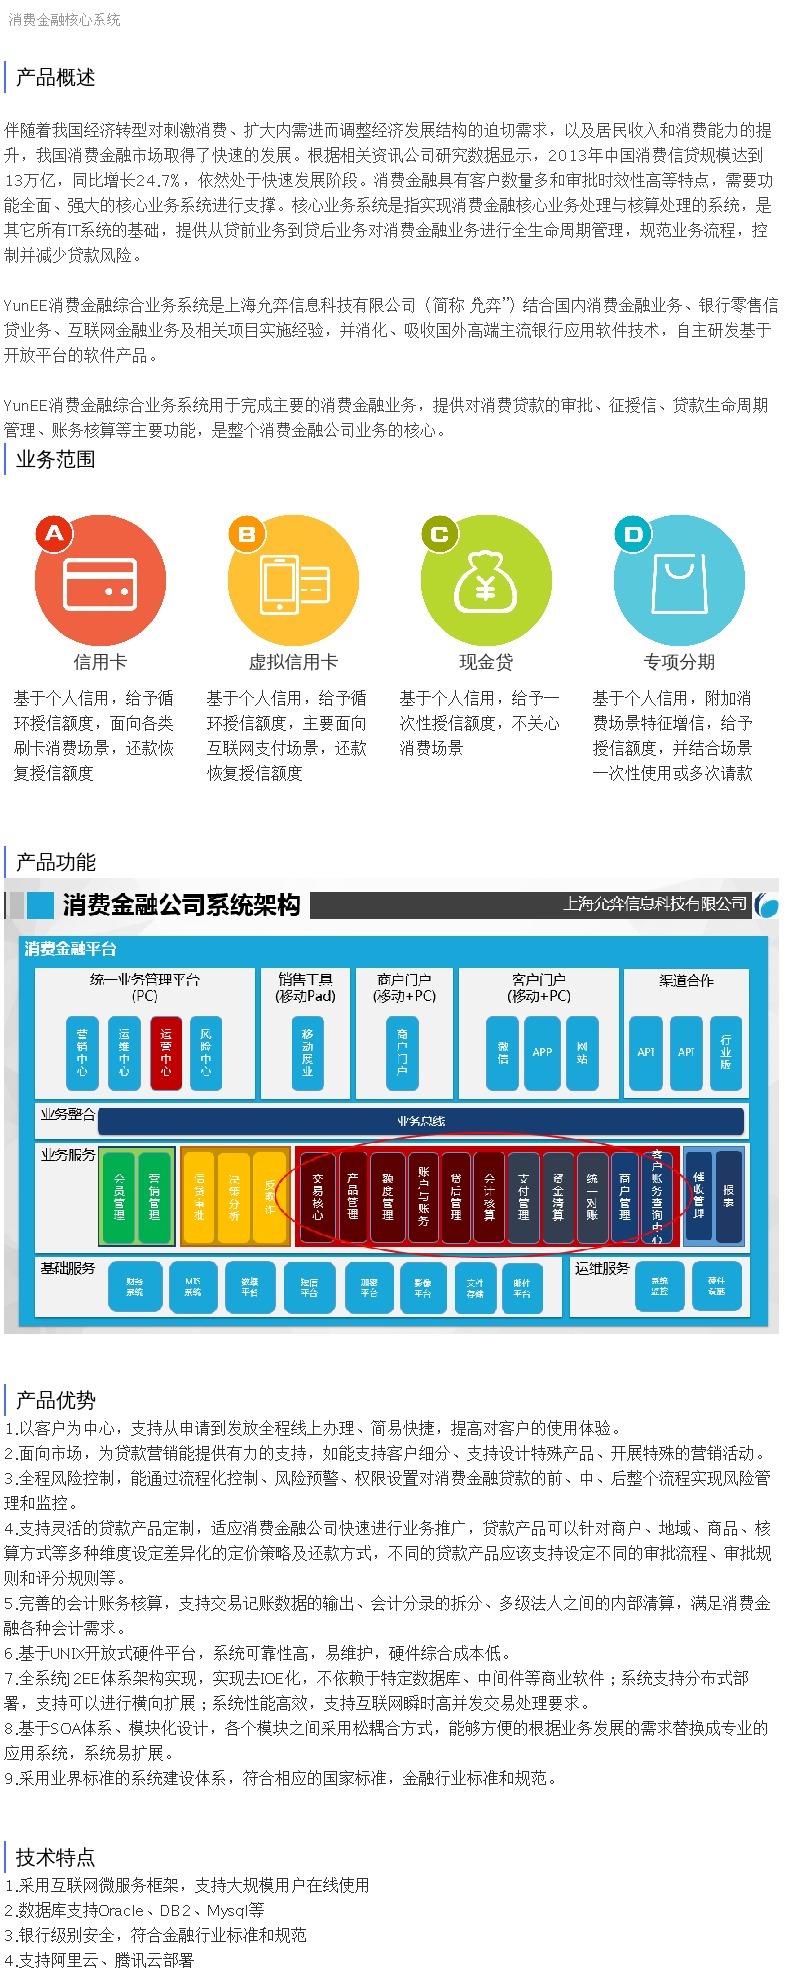 企服商城, 消费金融核心系统,上海允弈信息科技